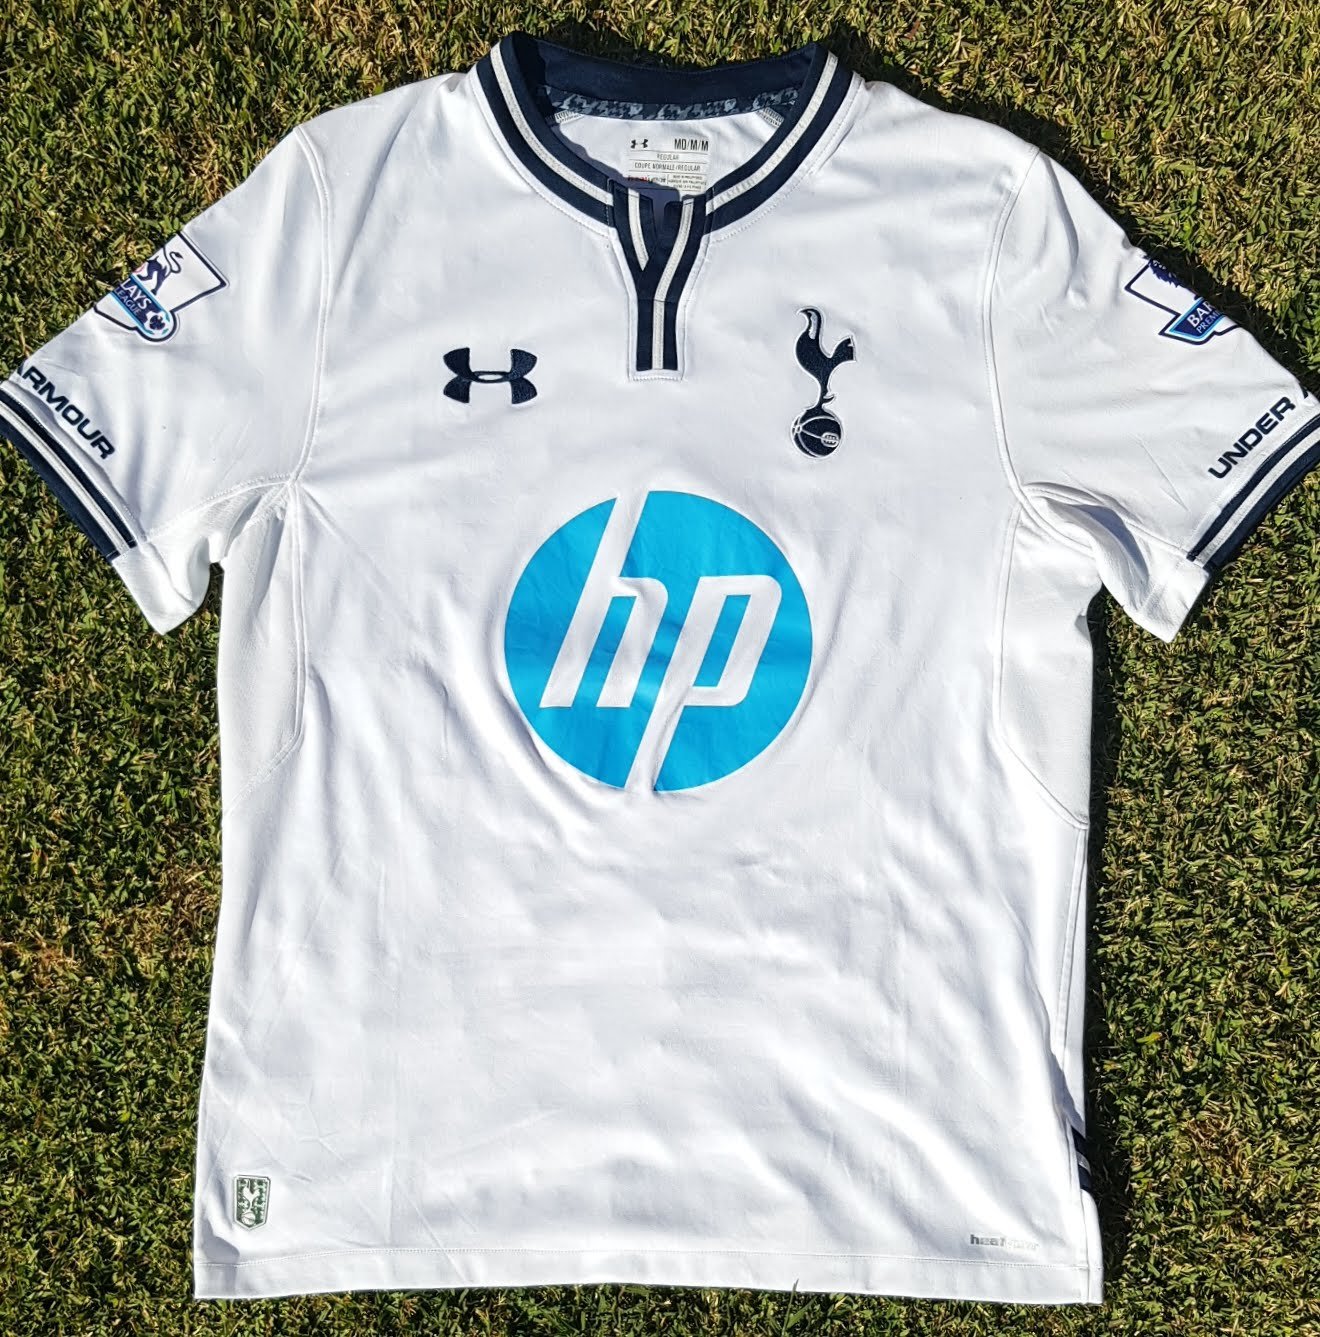 Tottenham Hotspur football shirt 2013 - 2014. Sponsored Hewlett Packard